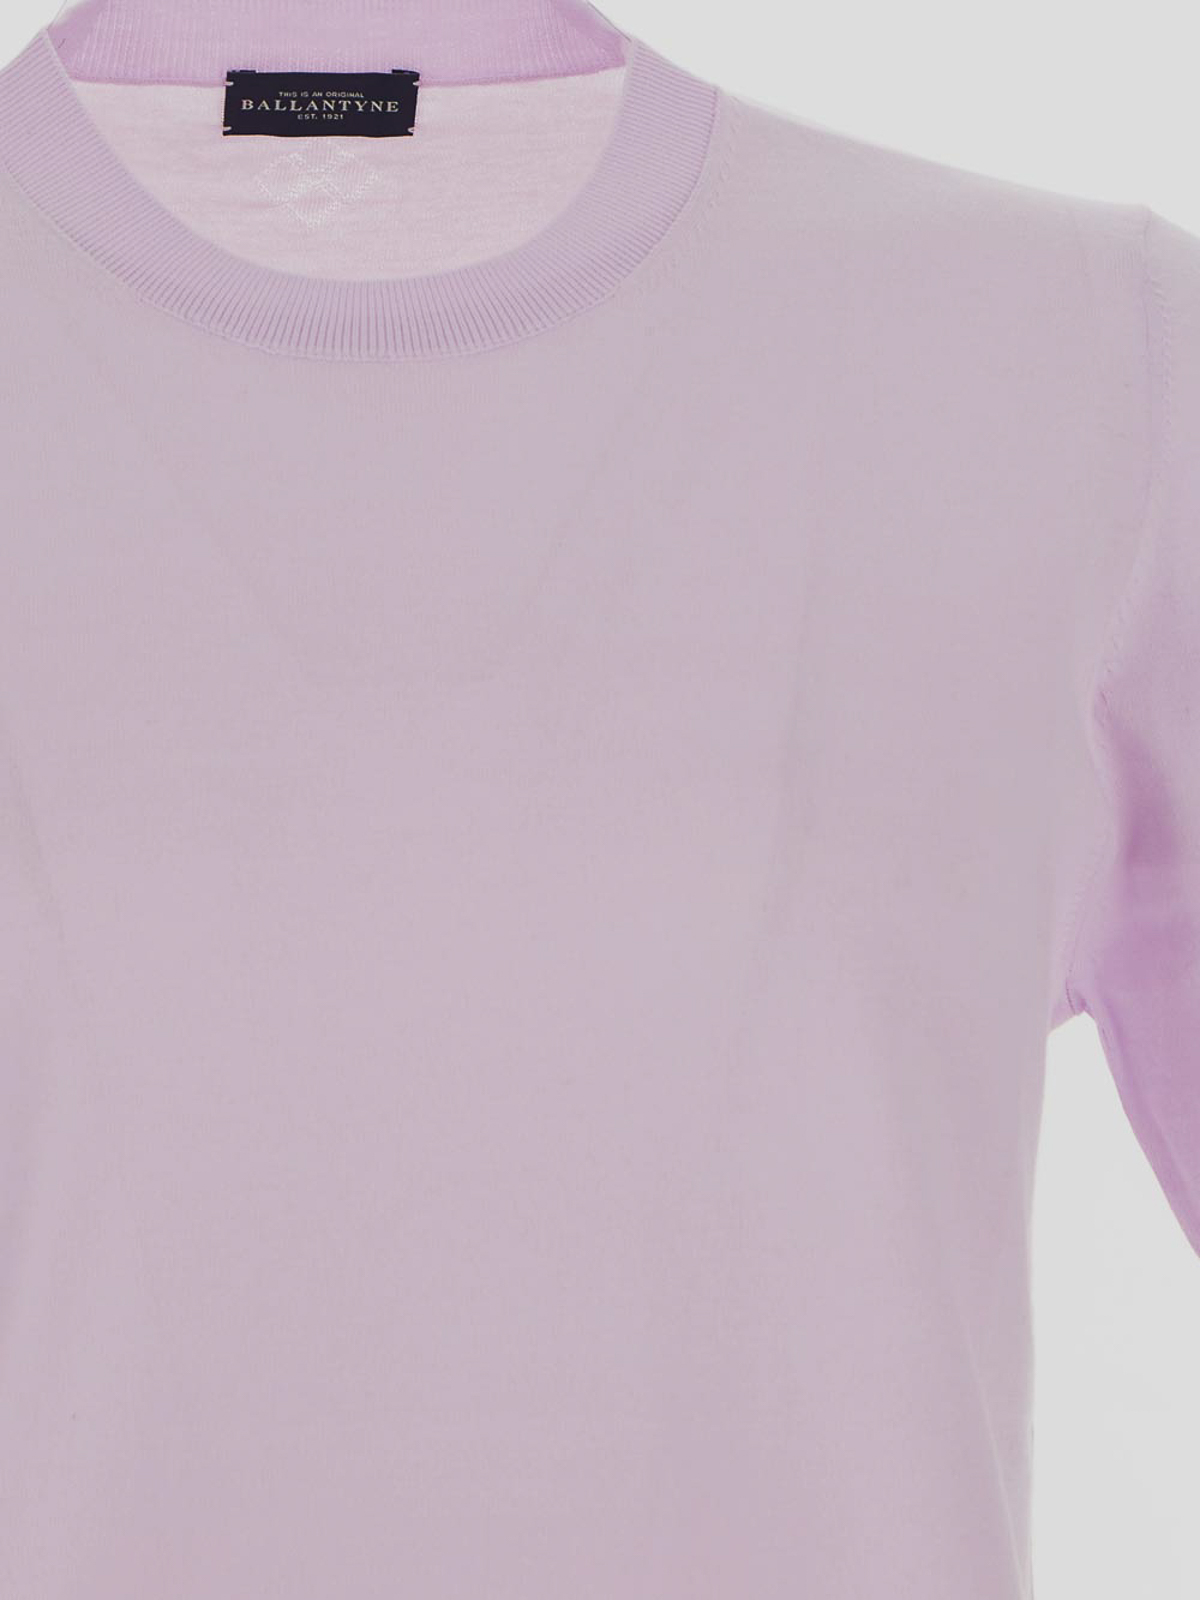 Shop Ballantyne Camiseta De Algodón In Light Purple